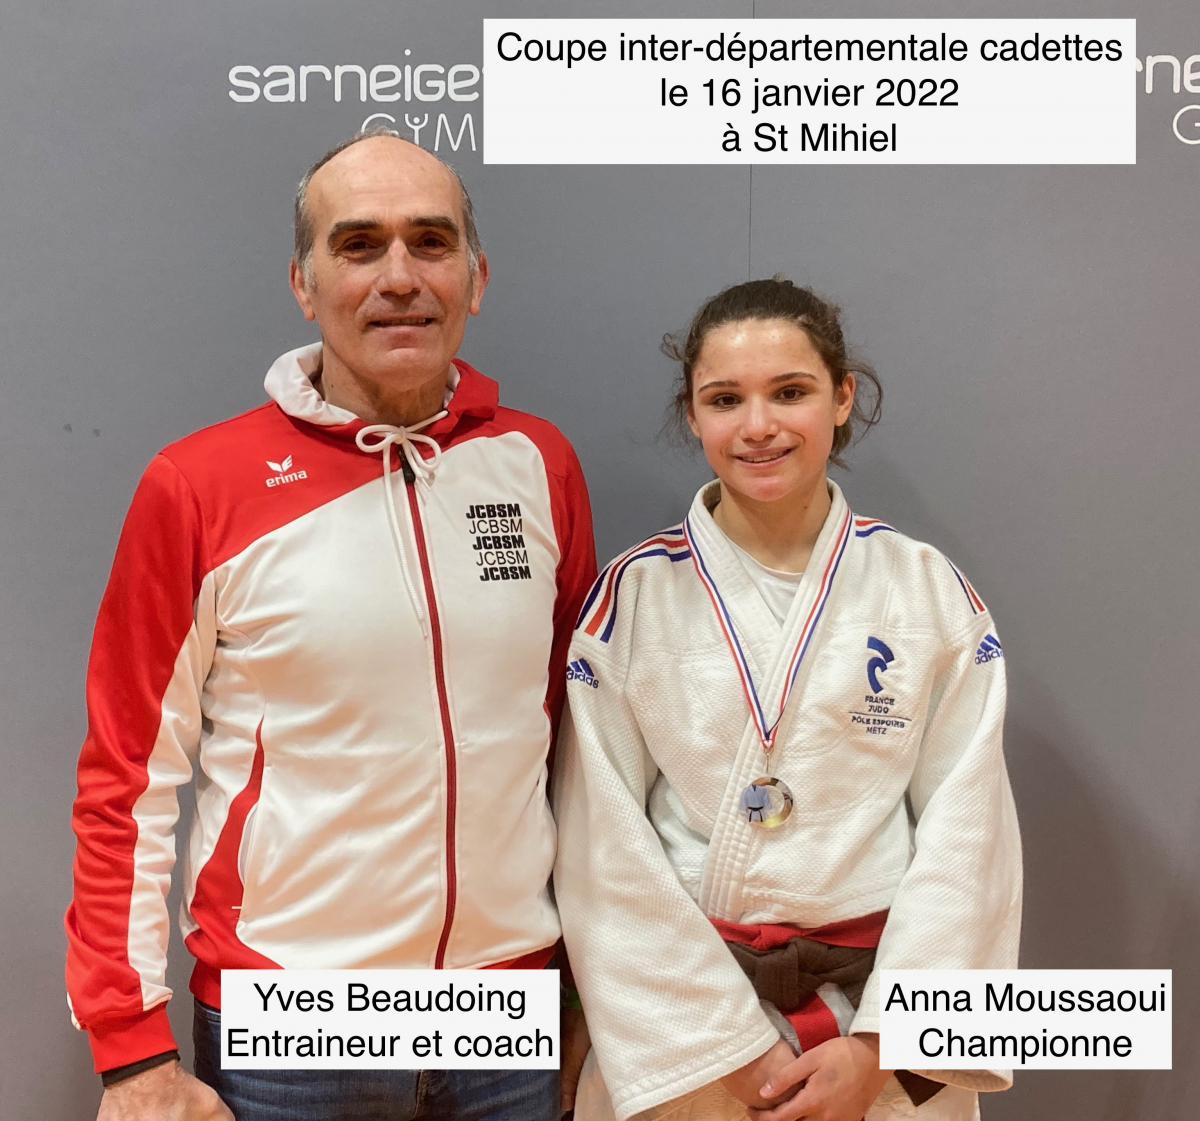 Anna Moussaoui la meilleure des cadettes !